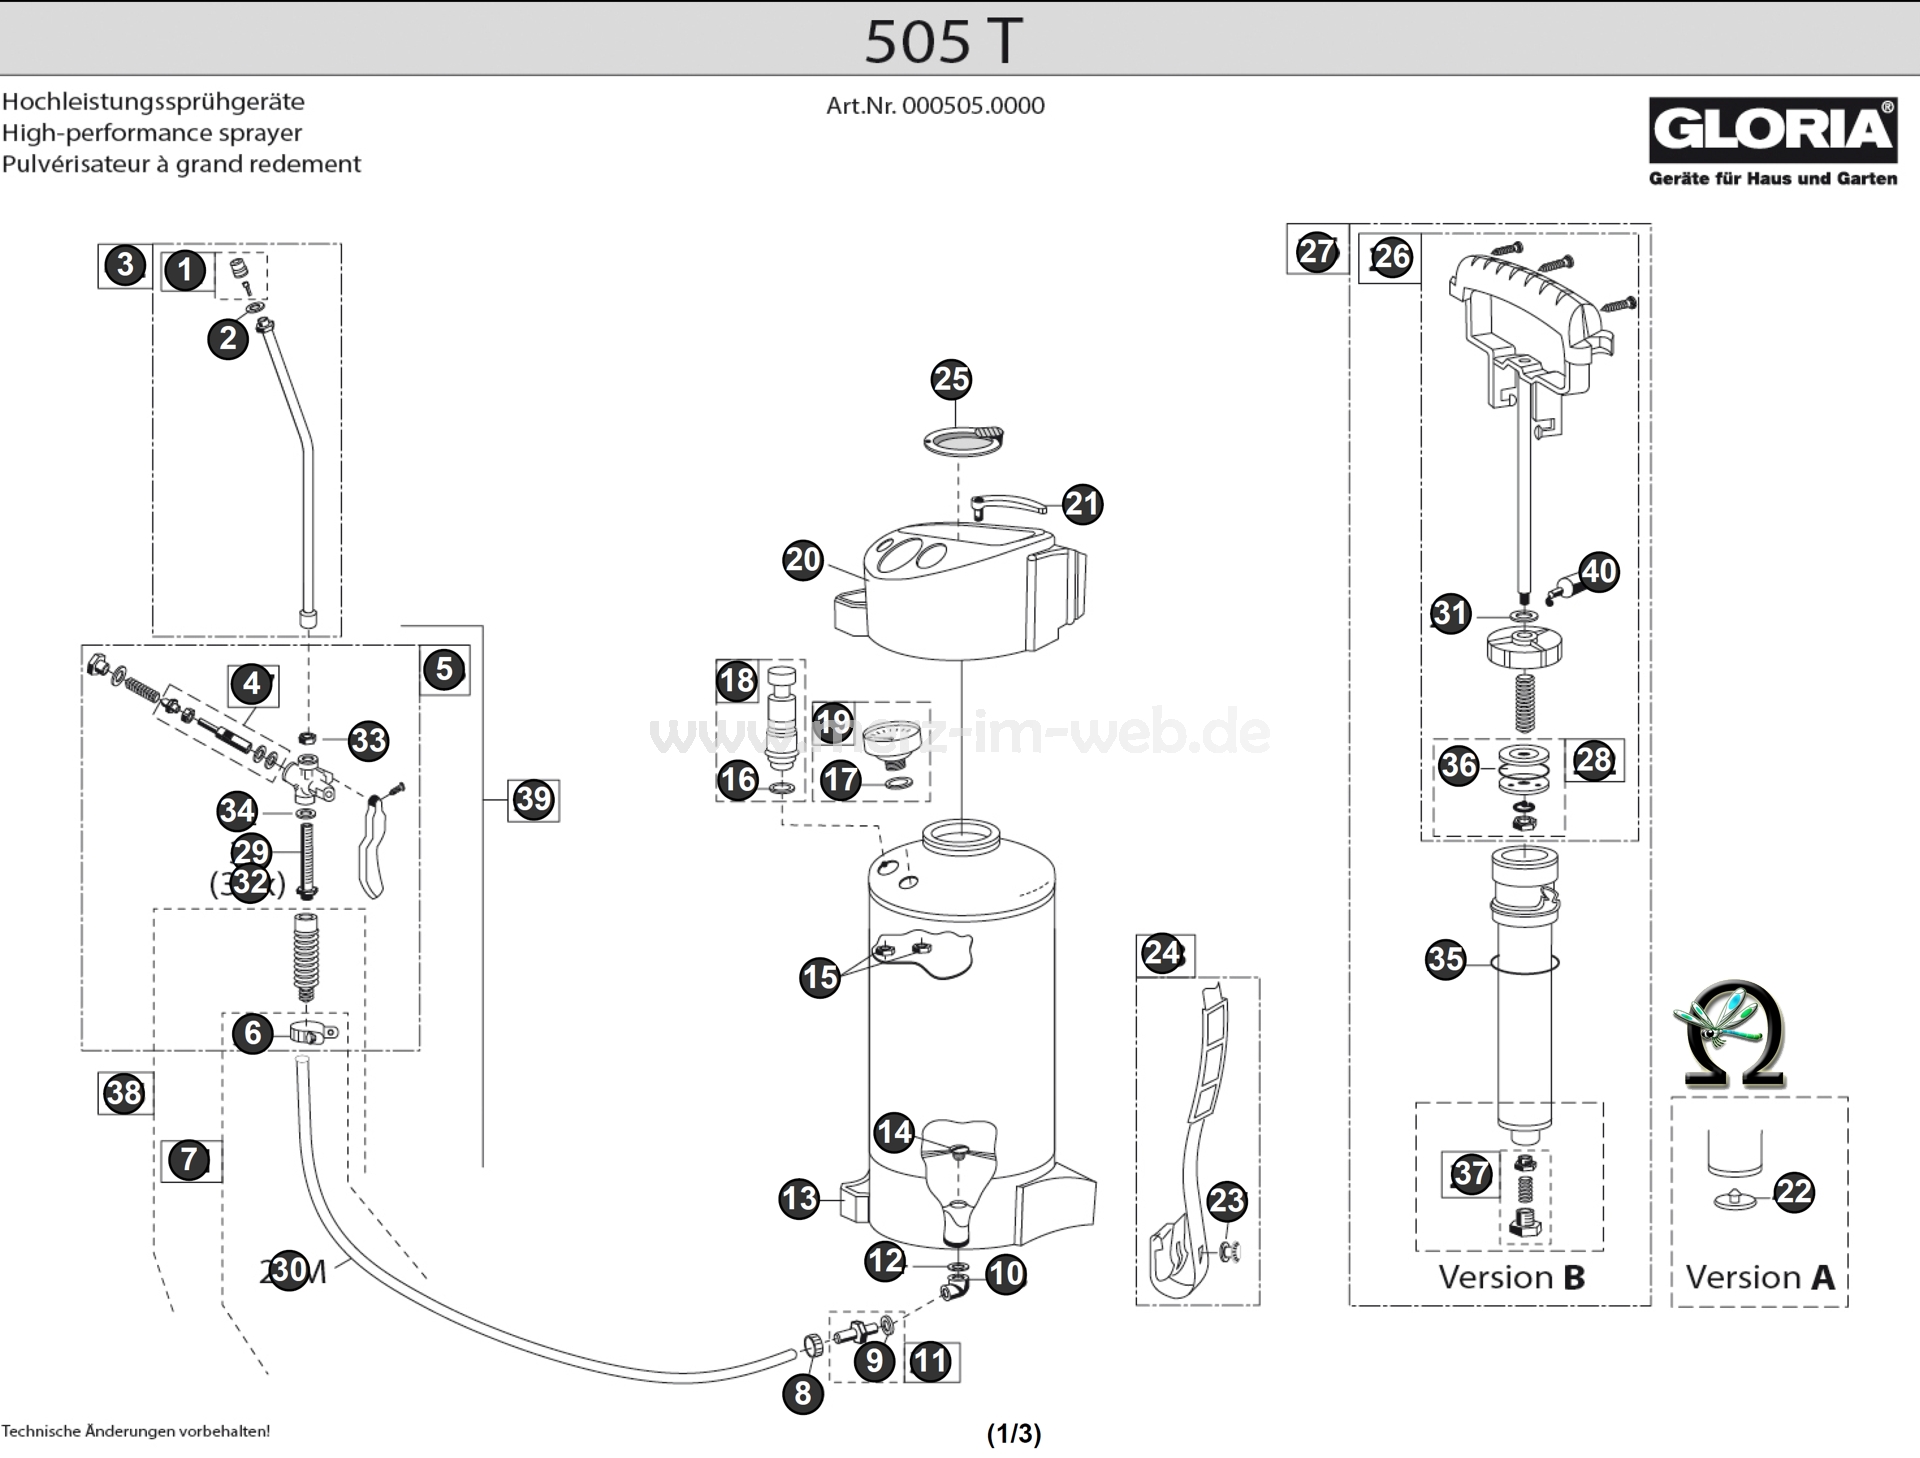 Die Ersatzteilzeichnung mit der Teileliste für das Gloria Hochleistungssprühgerät 505 T zum herunterladen und ausdrucken.